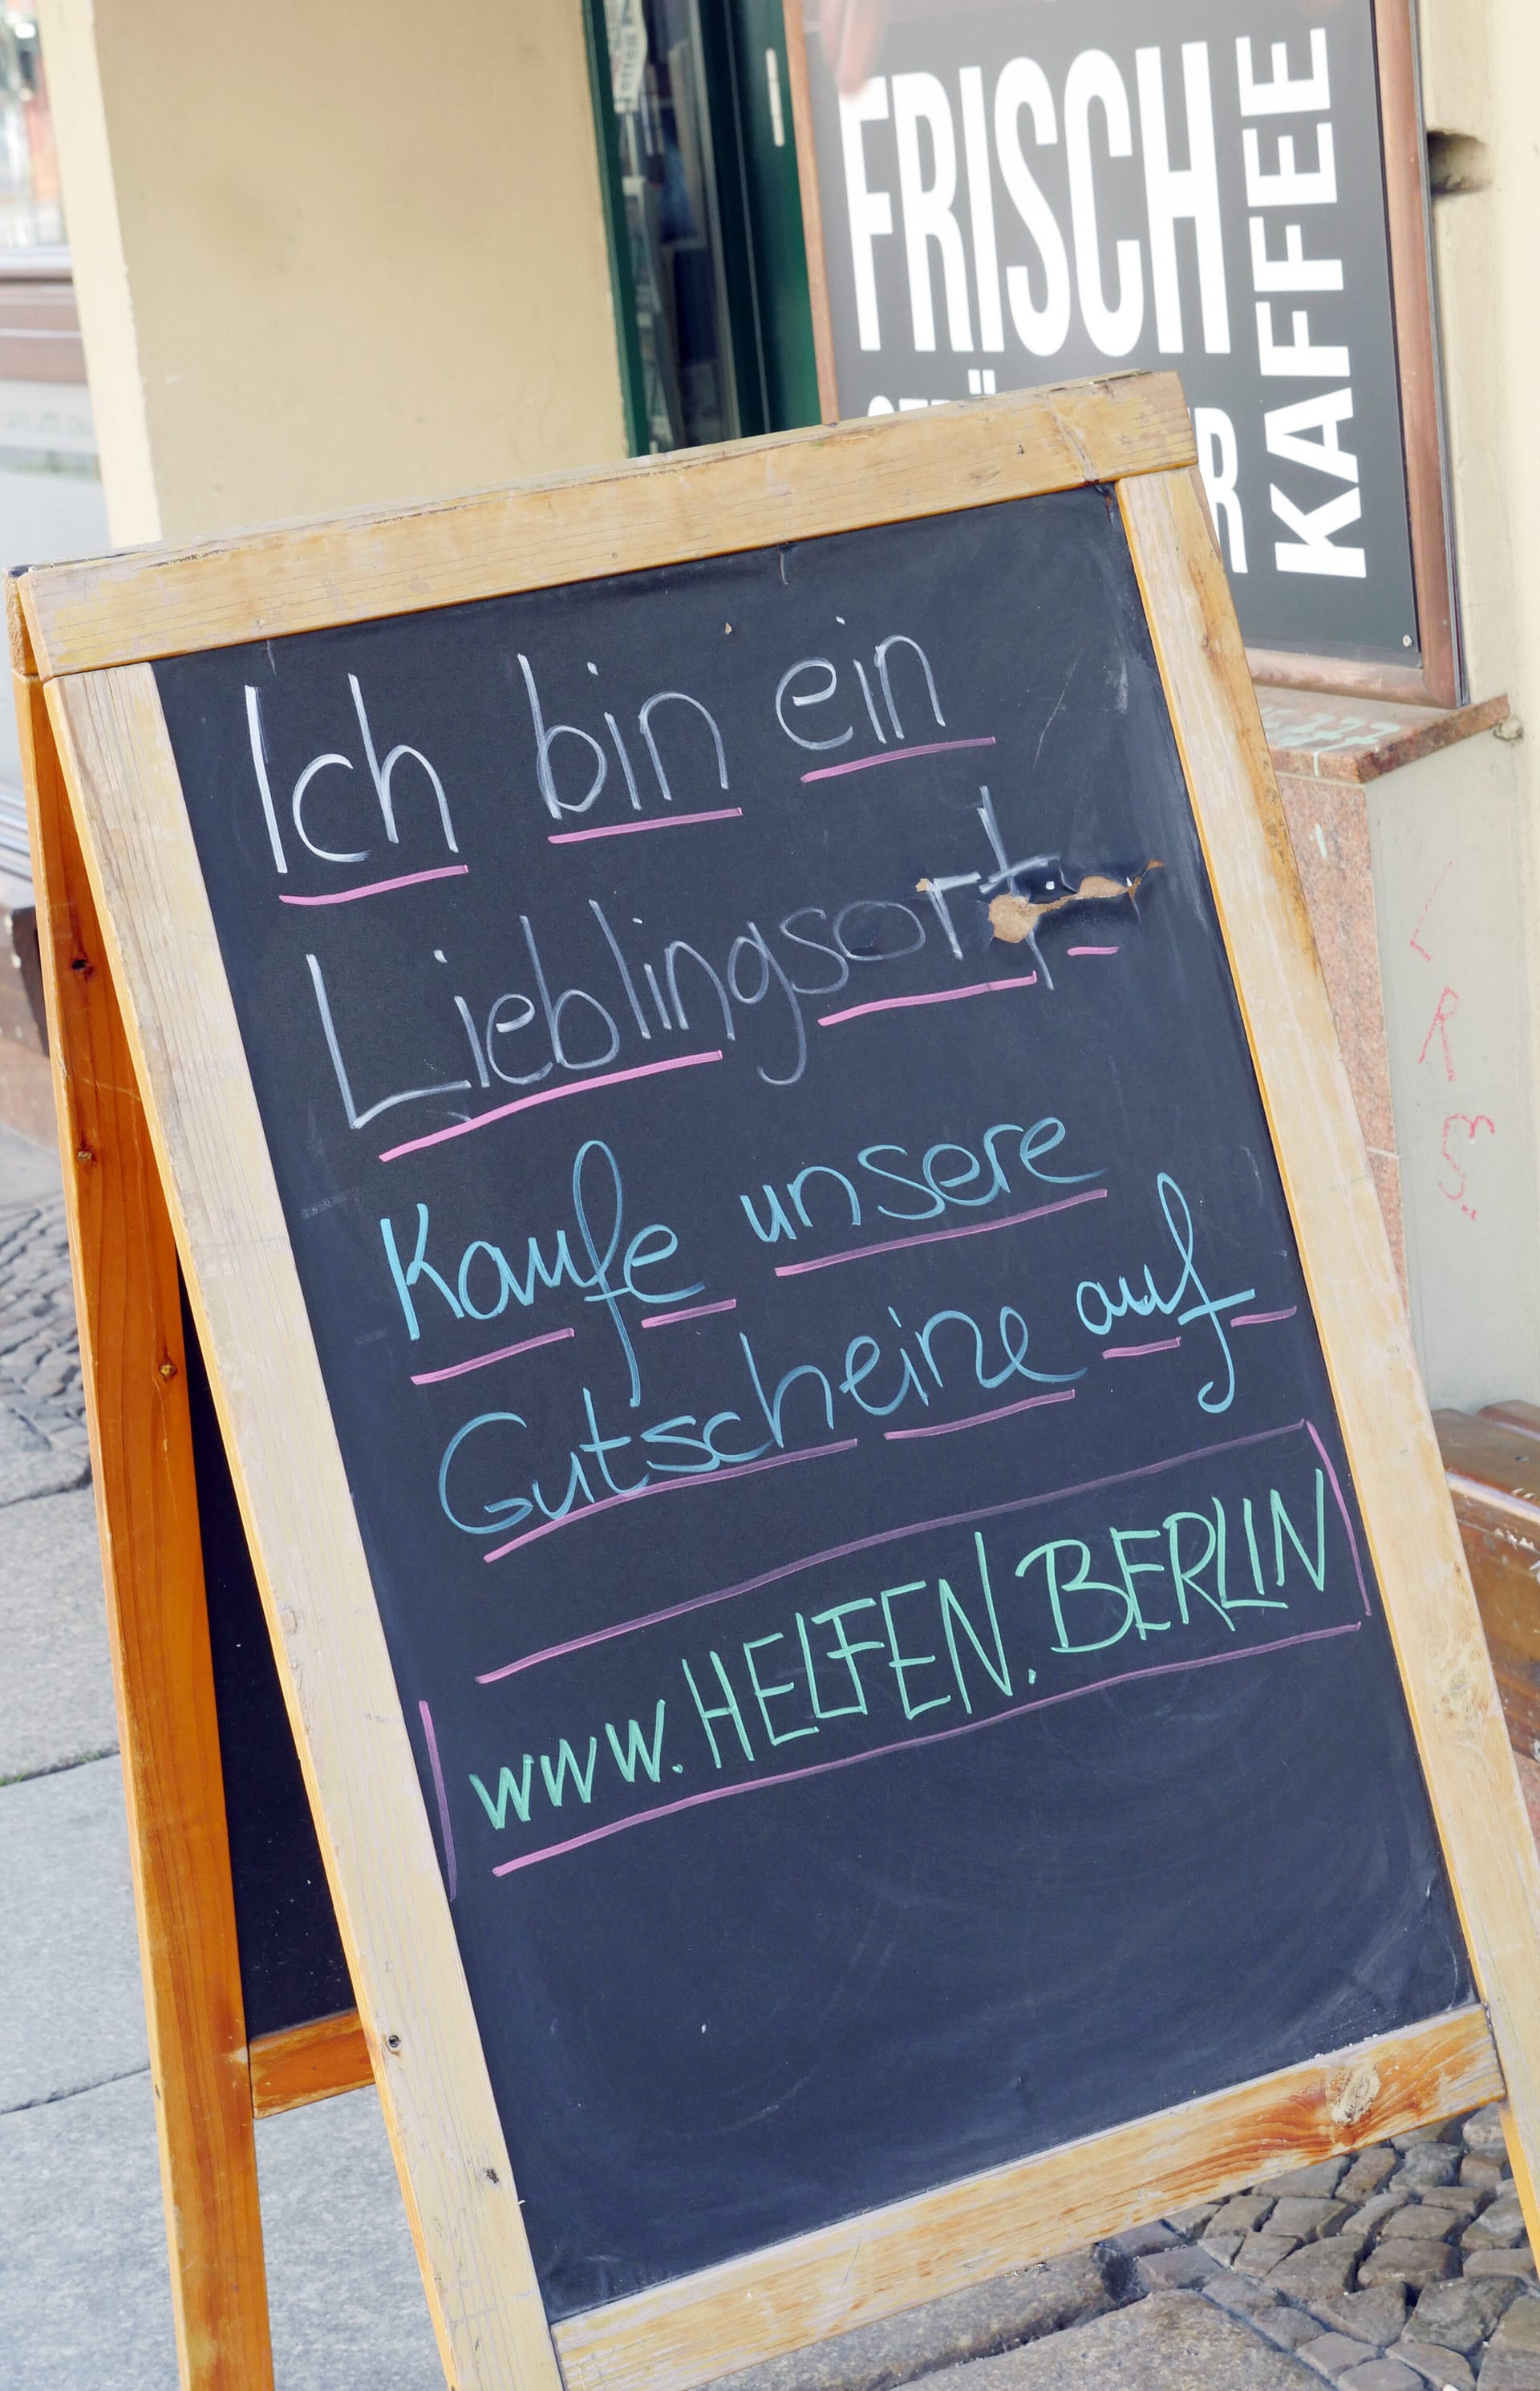 Ein Aufsteller vor einem Café: Auf www.helfen.berlin können Gutscheine gekauft werden, die nach der Corona-Krise eingelöst werden können.